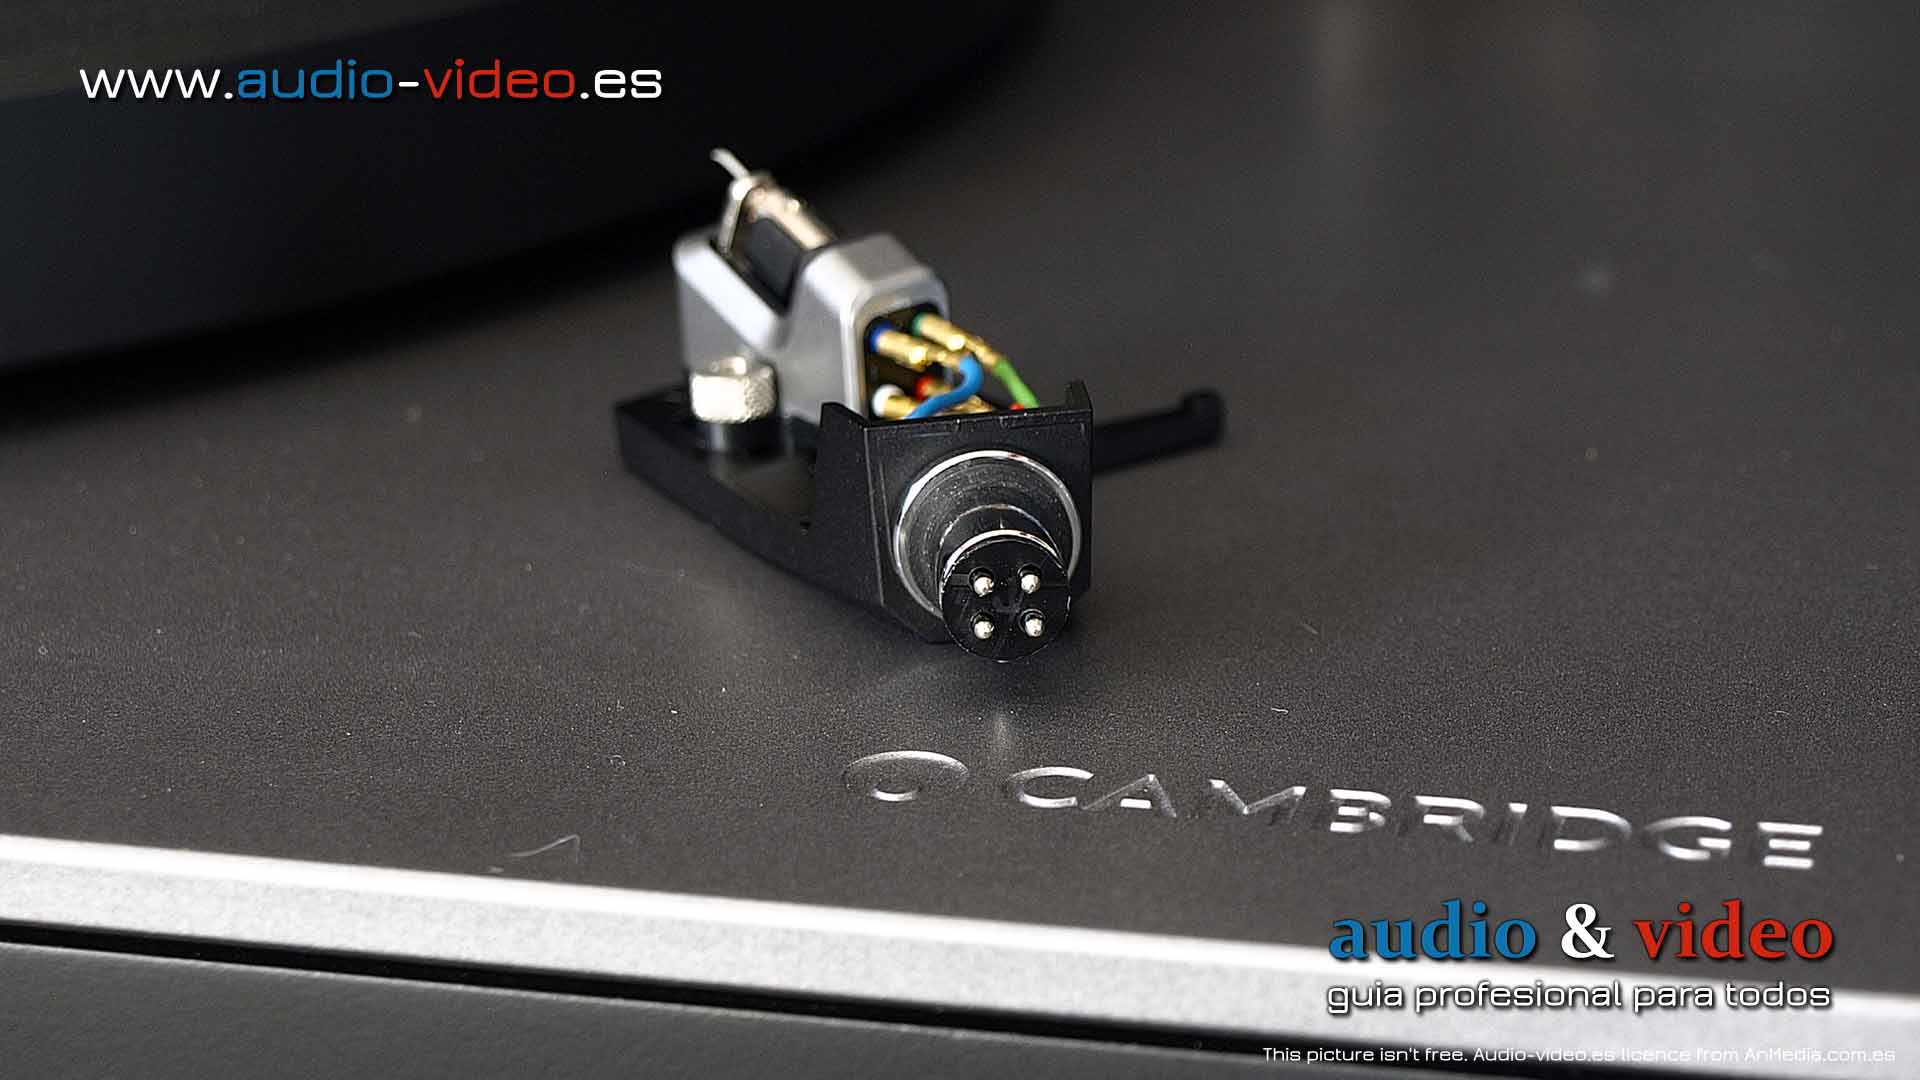 Cambridge Audio - Alva TT V2 - review - cartucho - connector